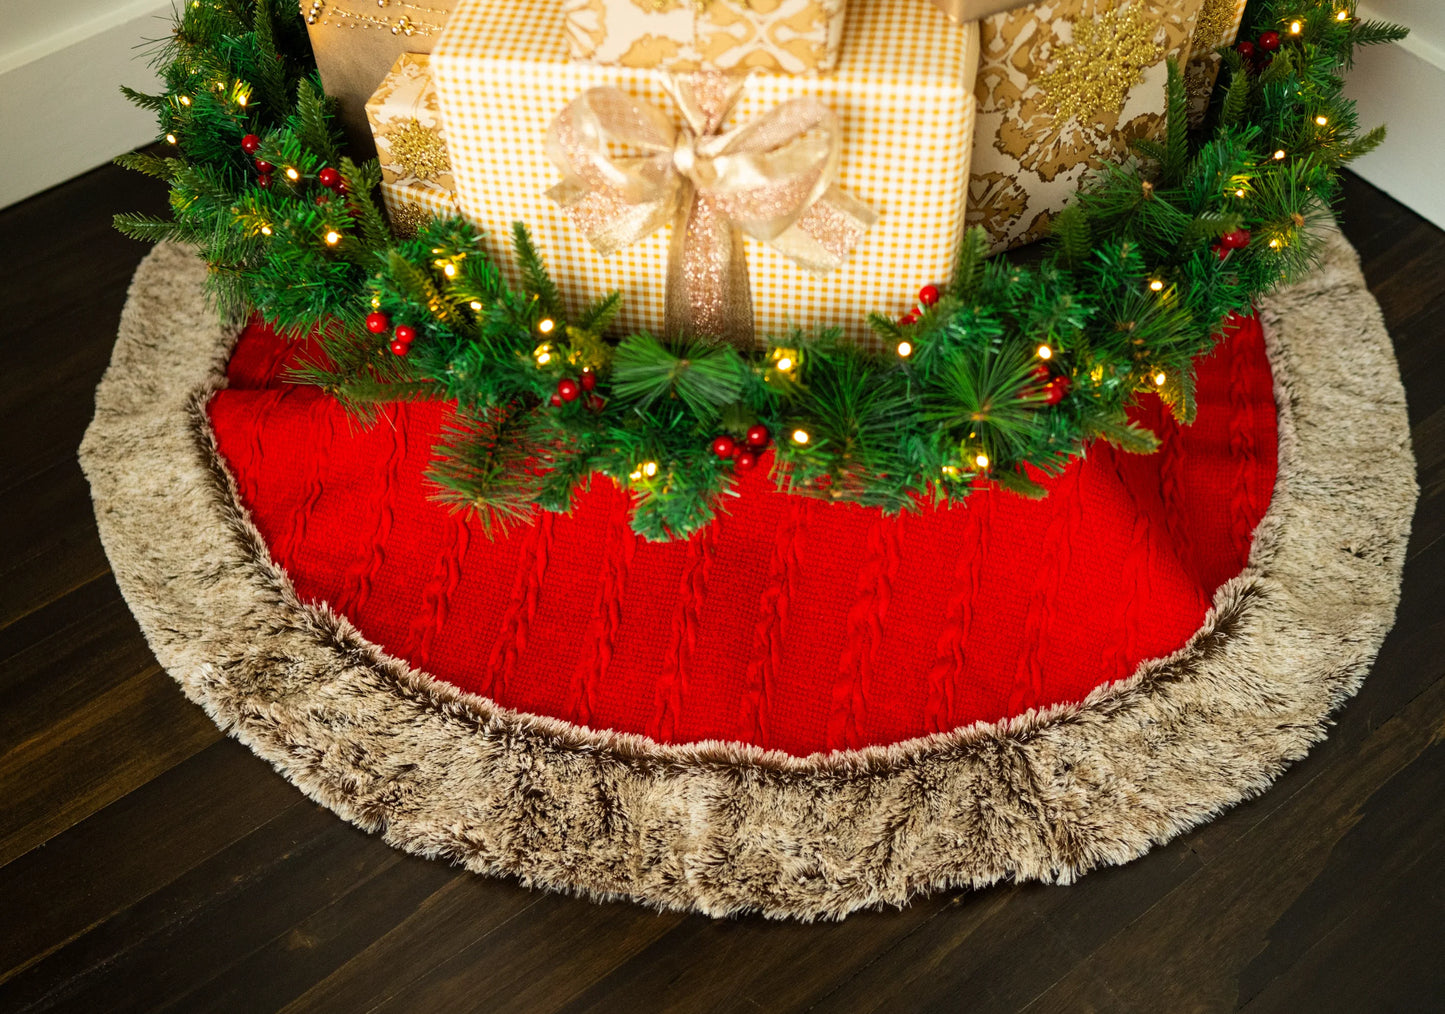 Tree Skirt & Santa Set - BUNDLE OFFER! SAVE 45%